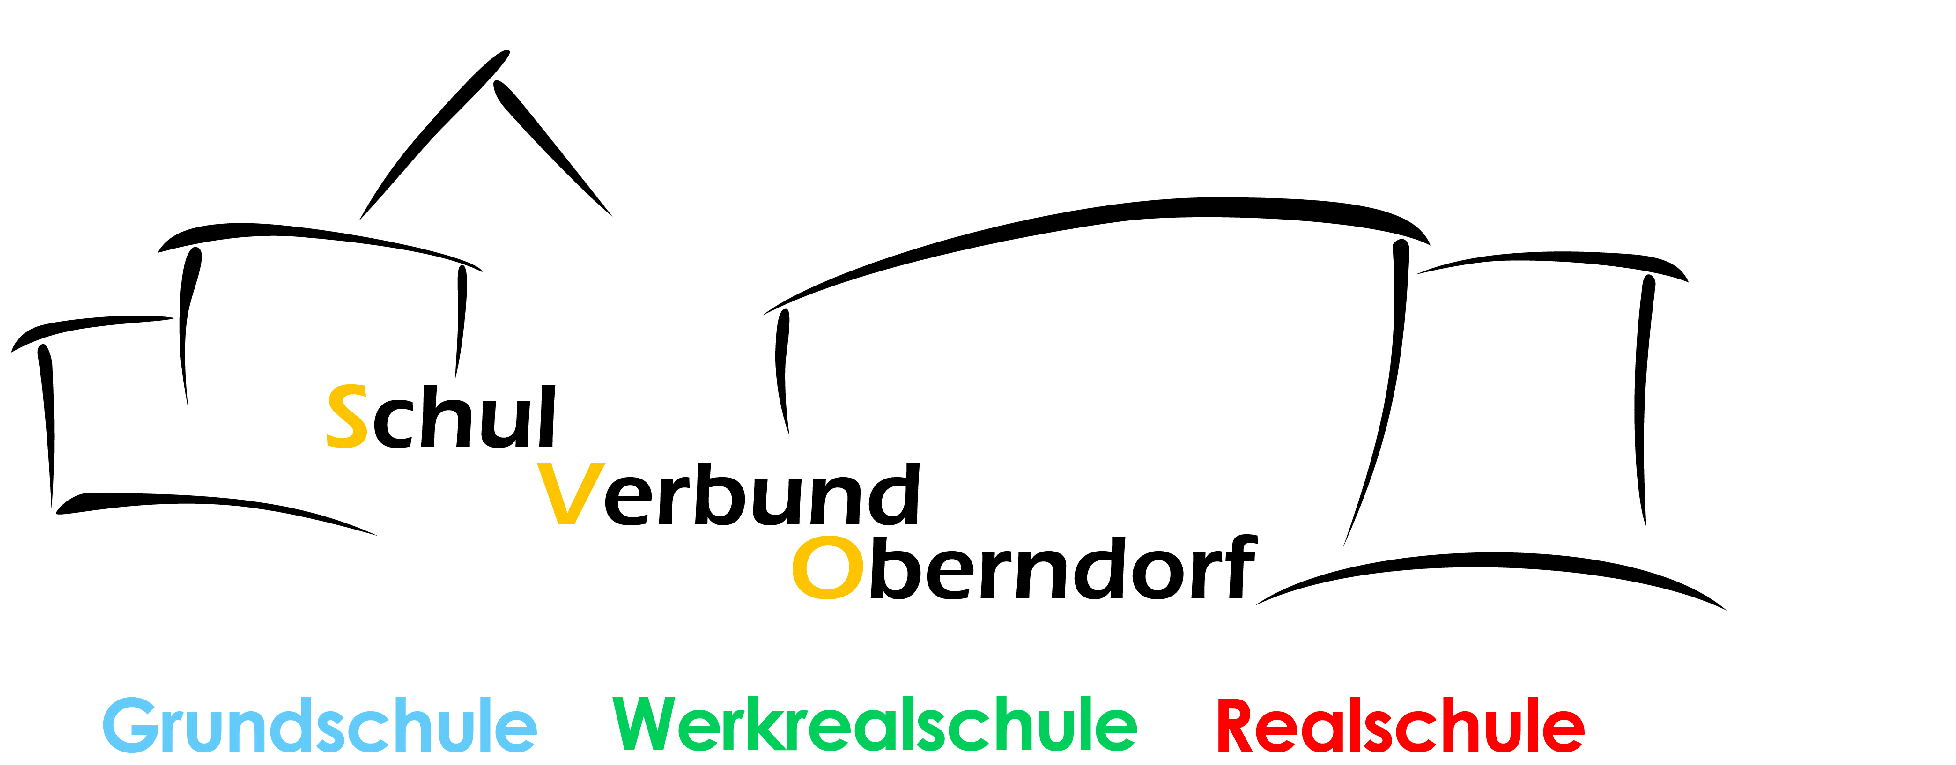 Schulverbund Oberndorf am Neckar